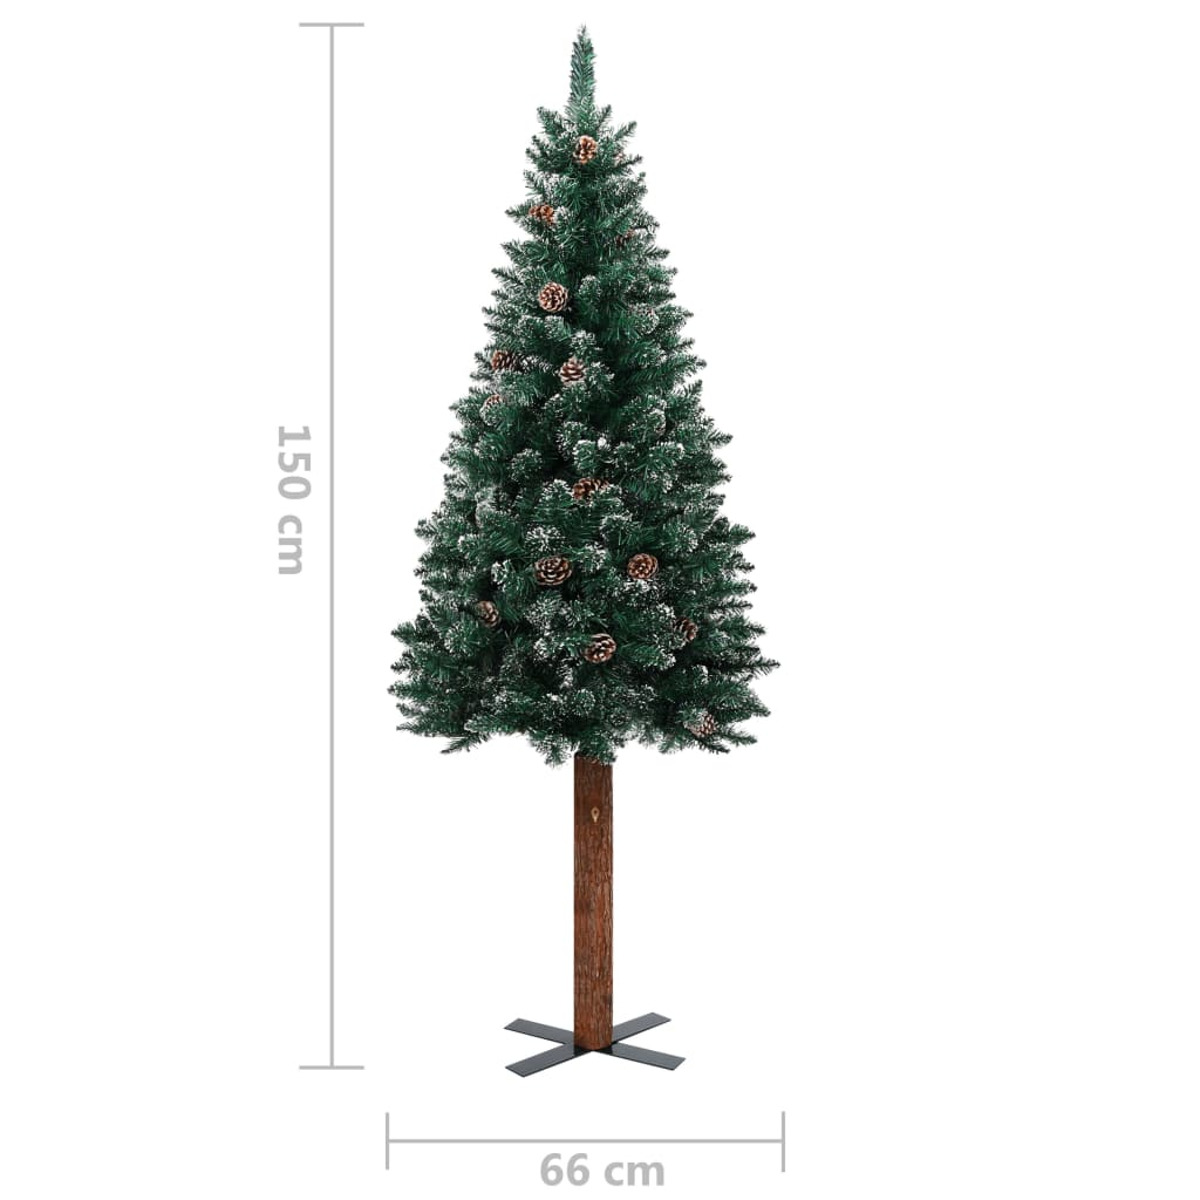 VIDAXL 3077911 Weihnachtsbaum